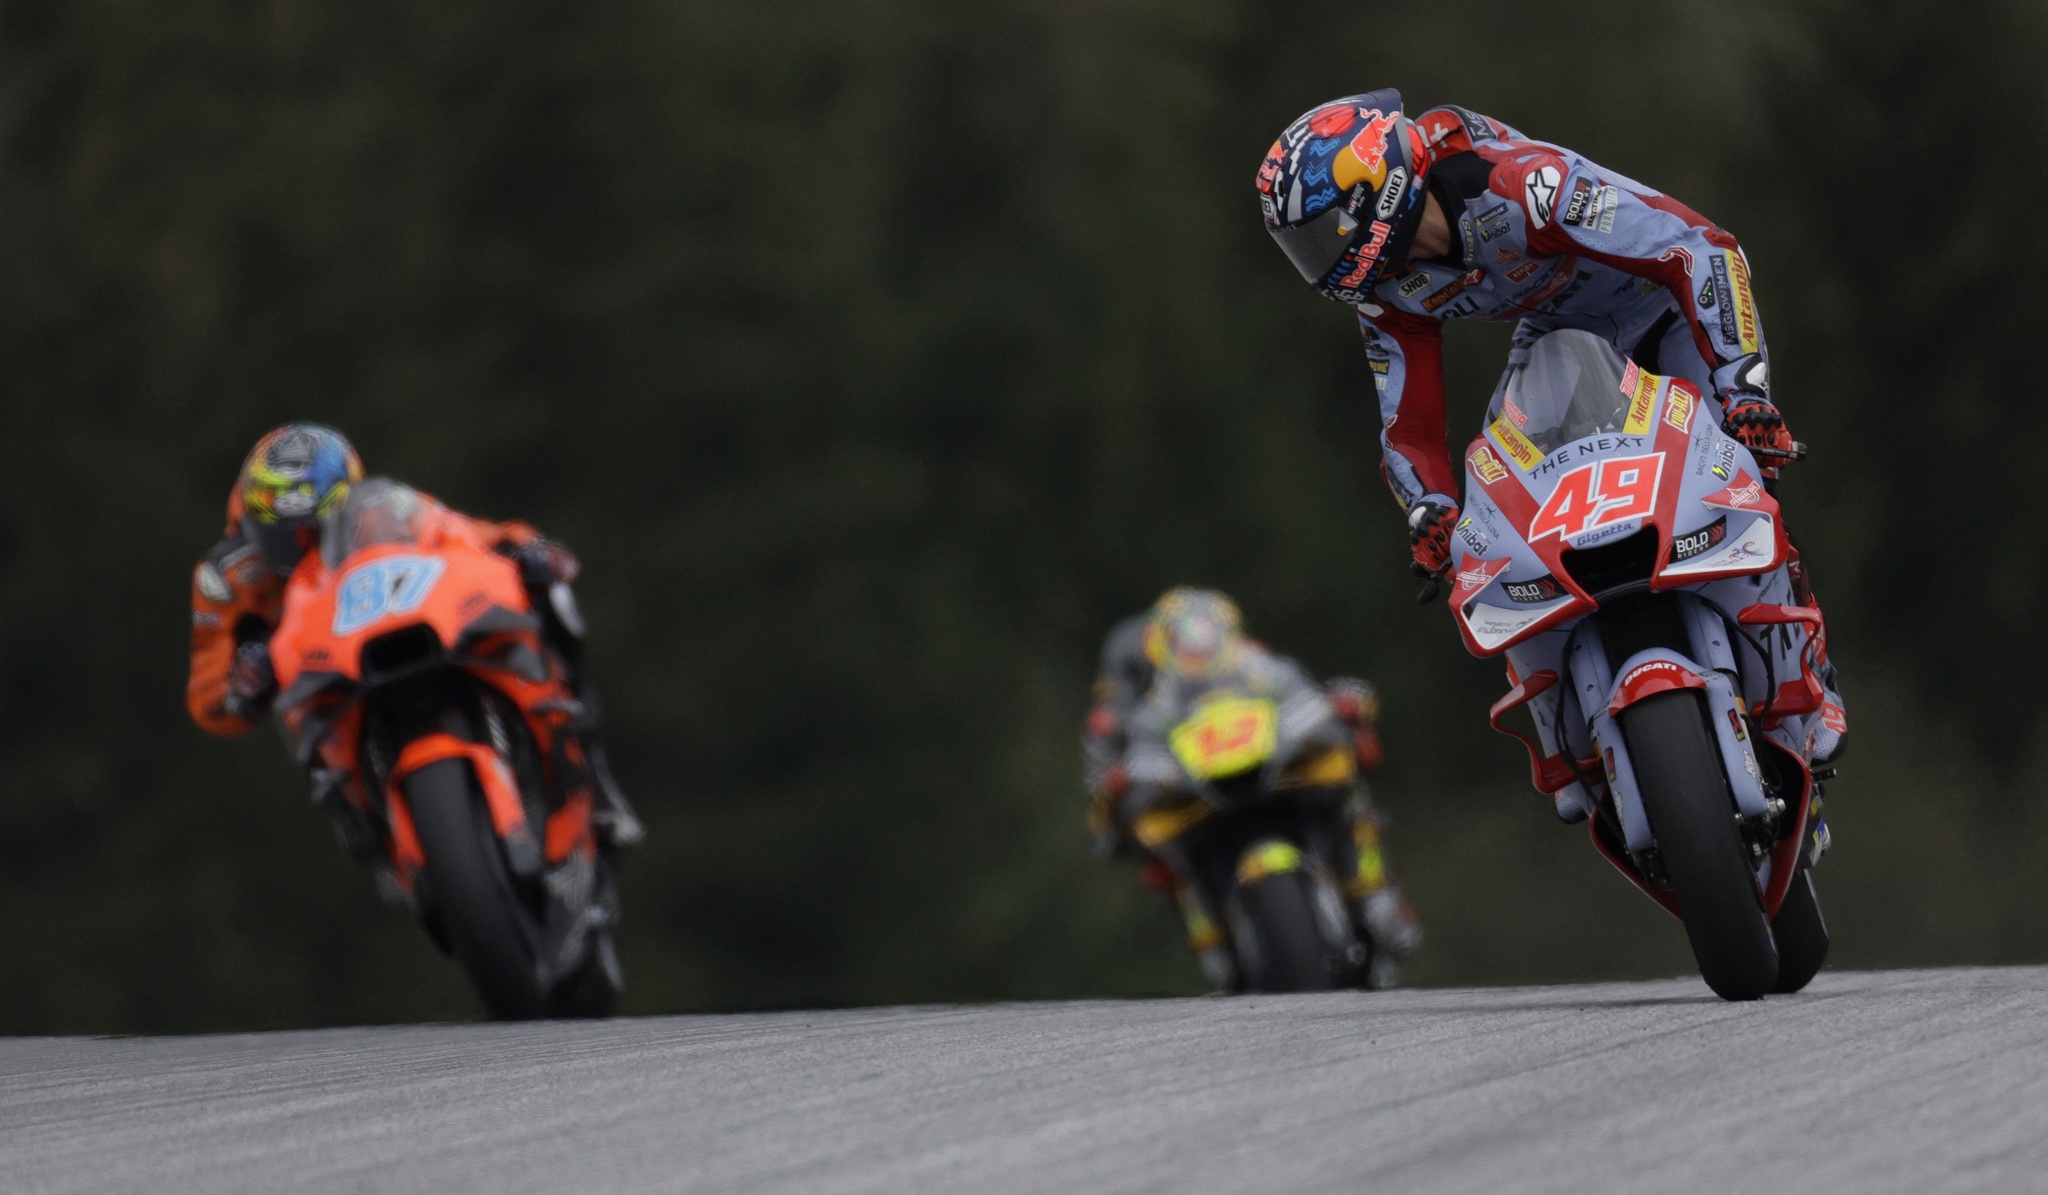 MotoGP muda formato dos Grandes Prémios e terá corridas sprint a partir de  2023